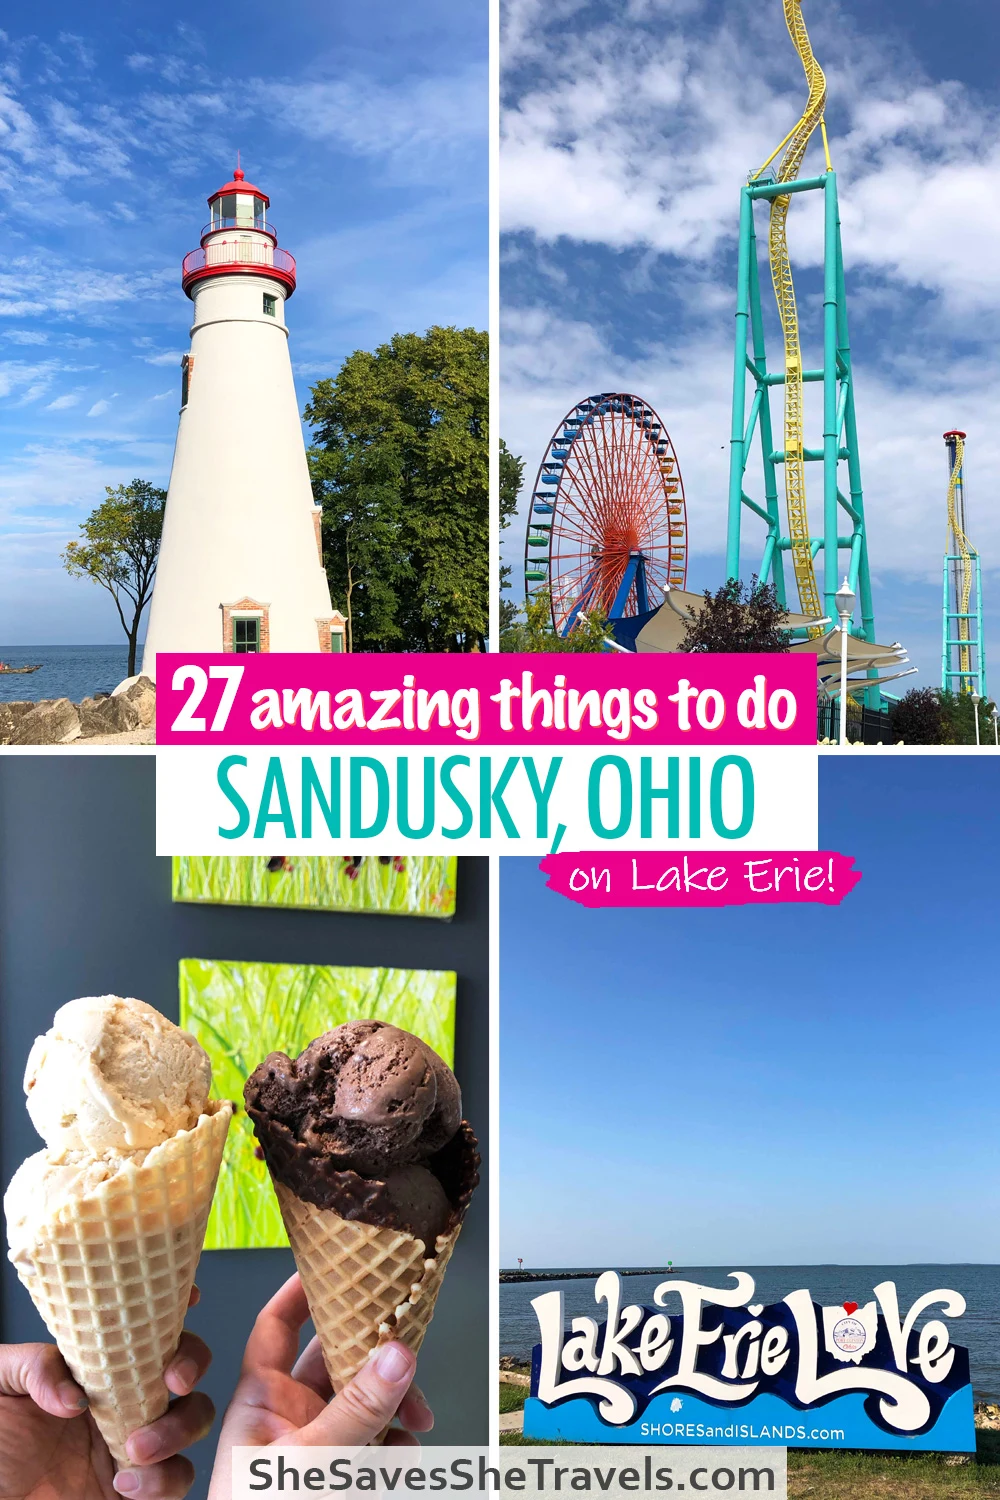 27 amazing things to do Sandusky Ohio on Lake Erie